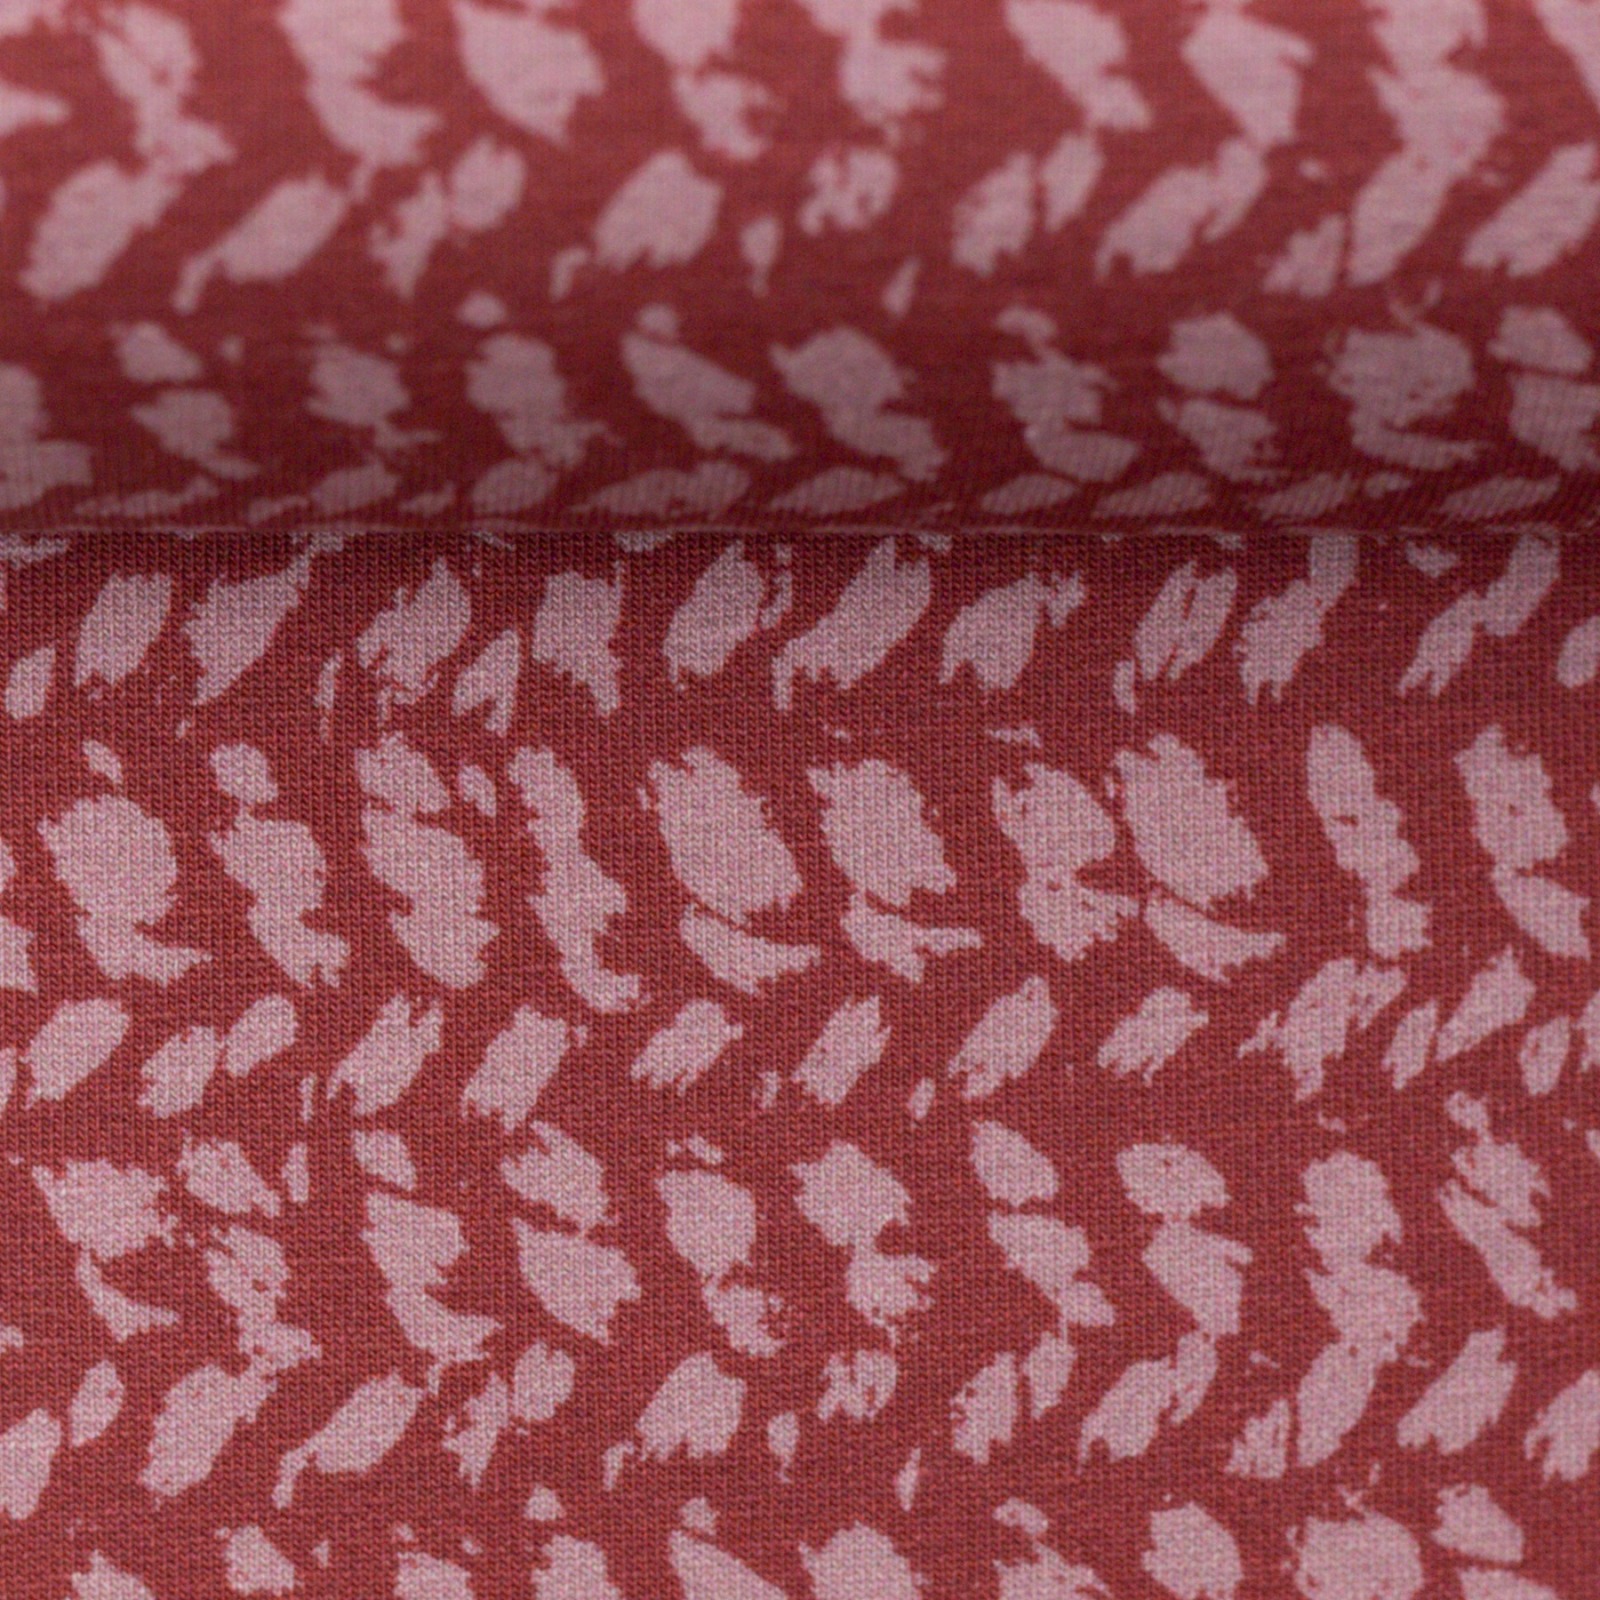 0,5m Sweat Herringbone Knit by Käselotti, dusty Red 2